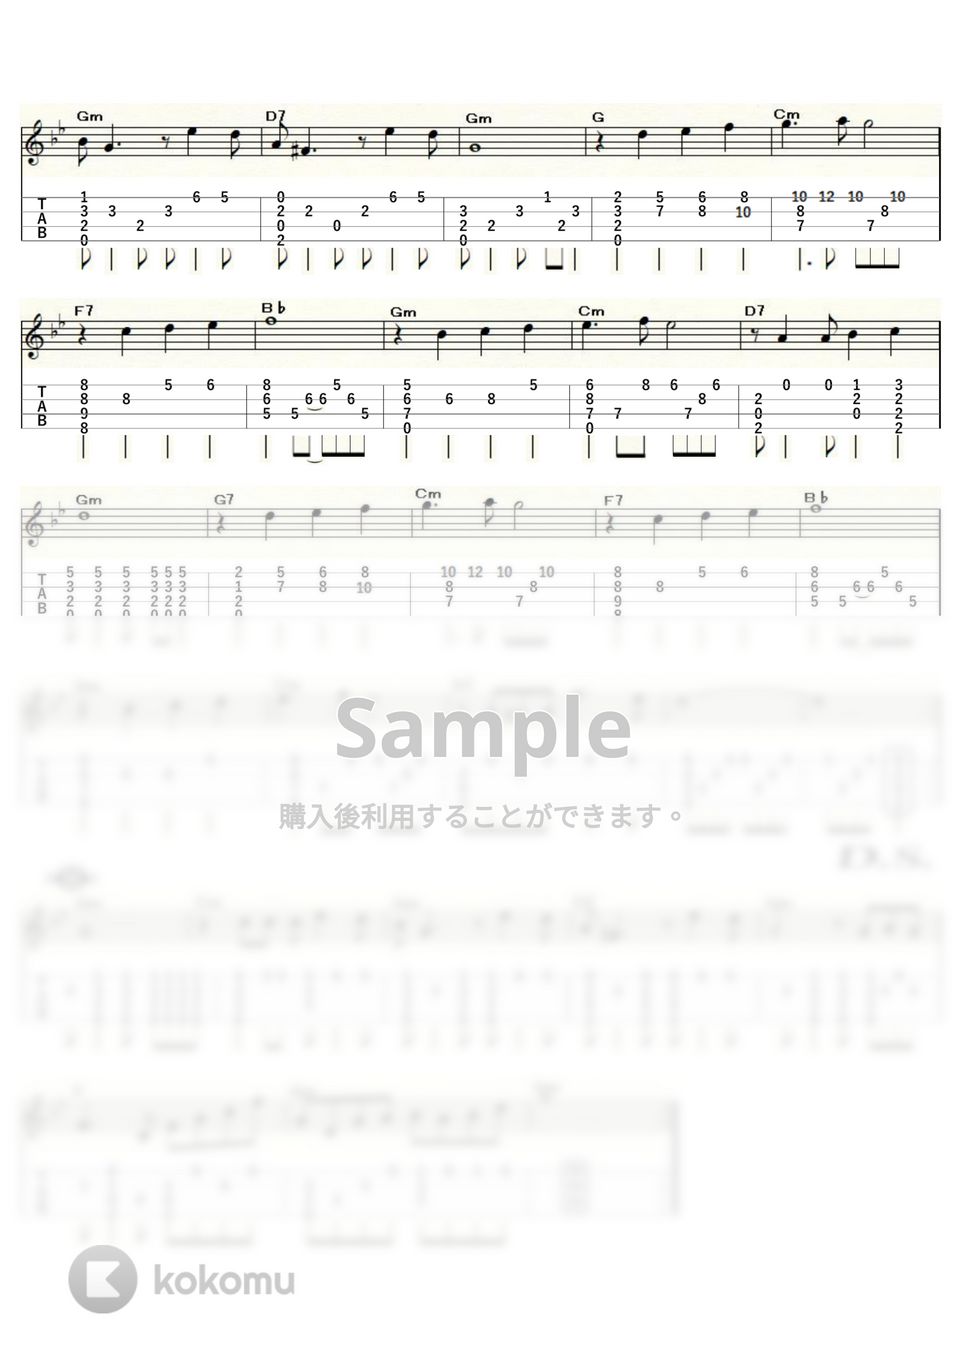 夜霧のしのび逢い - 夜霧のしのび逢い (ｳｸﾚﾚｿﾛ / High-G・Low-G / 中級) by ukulelepapa